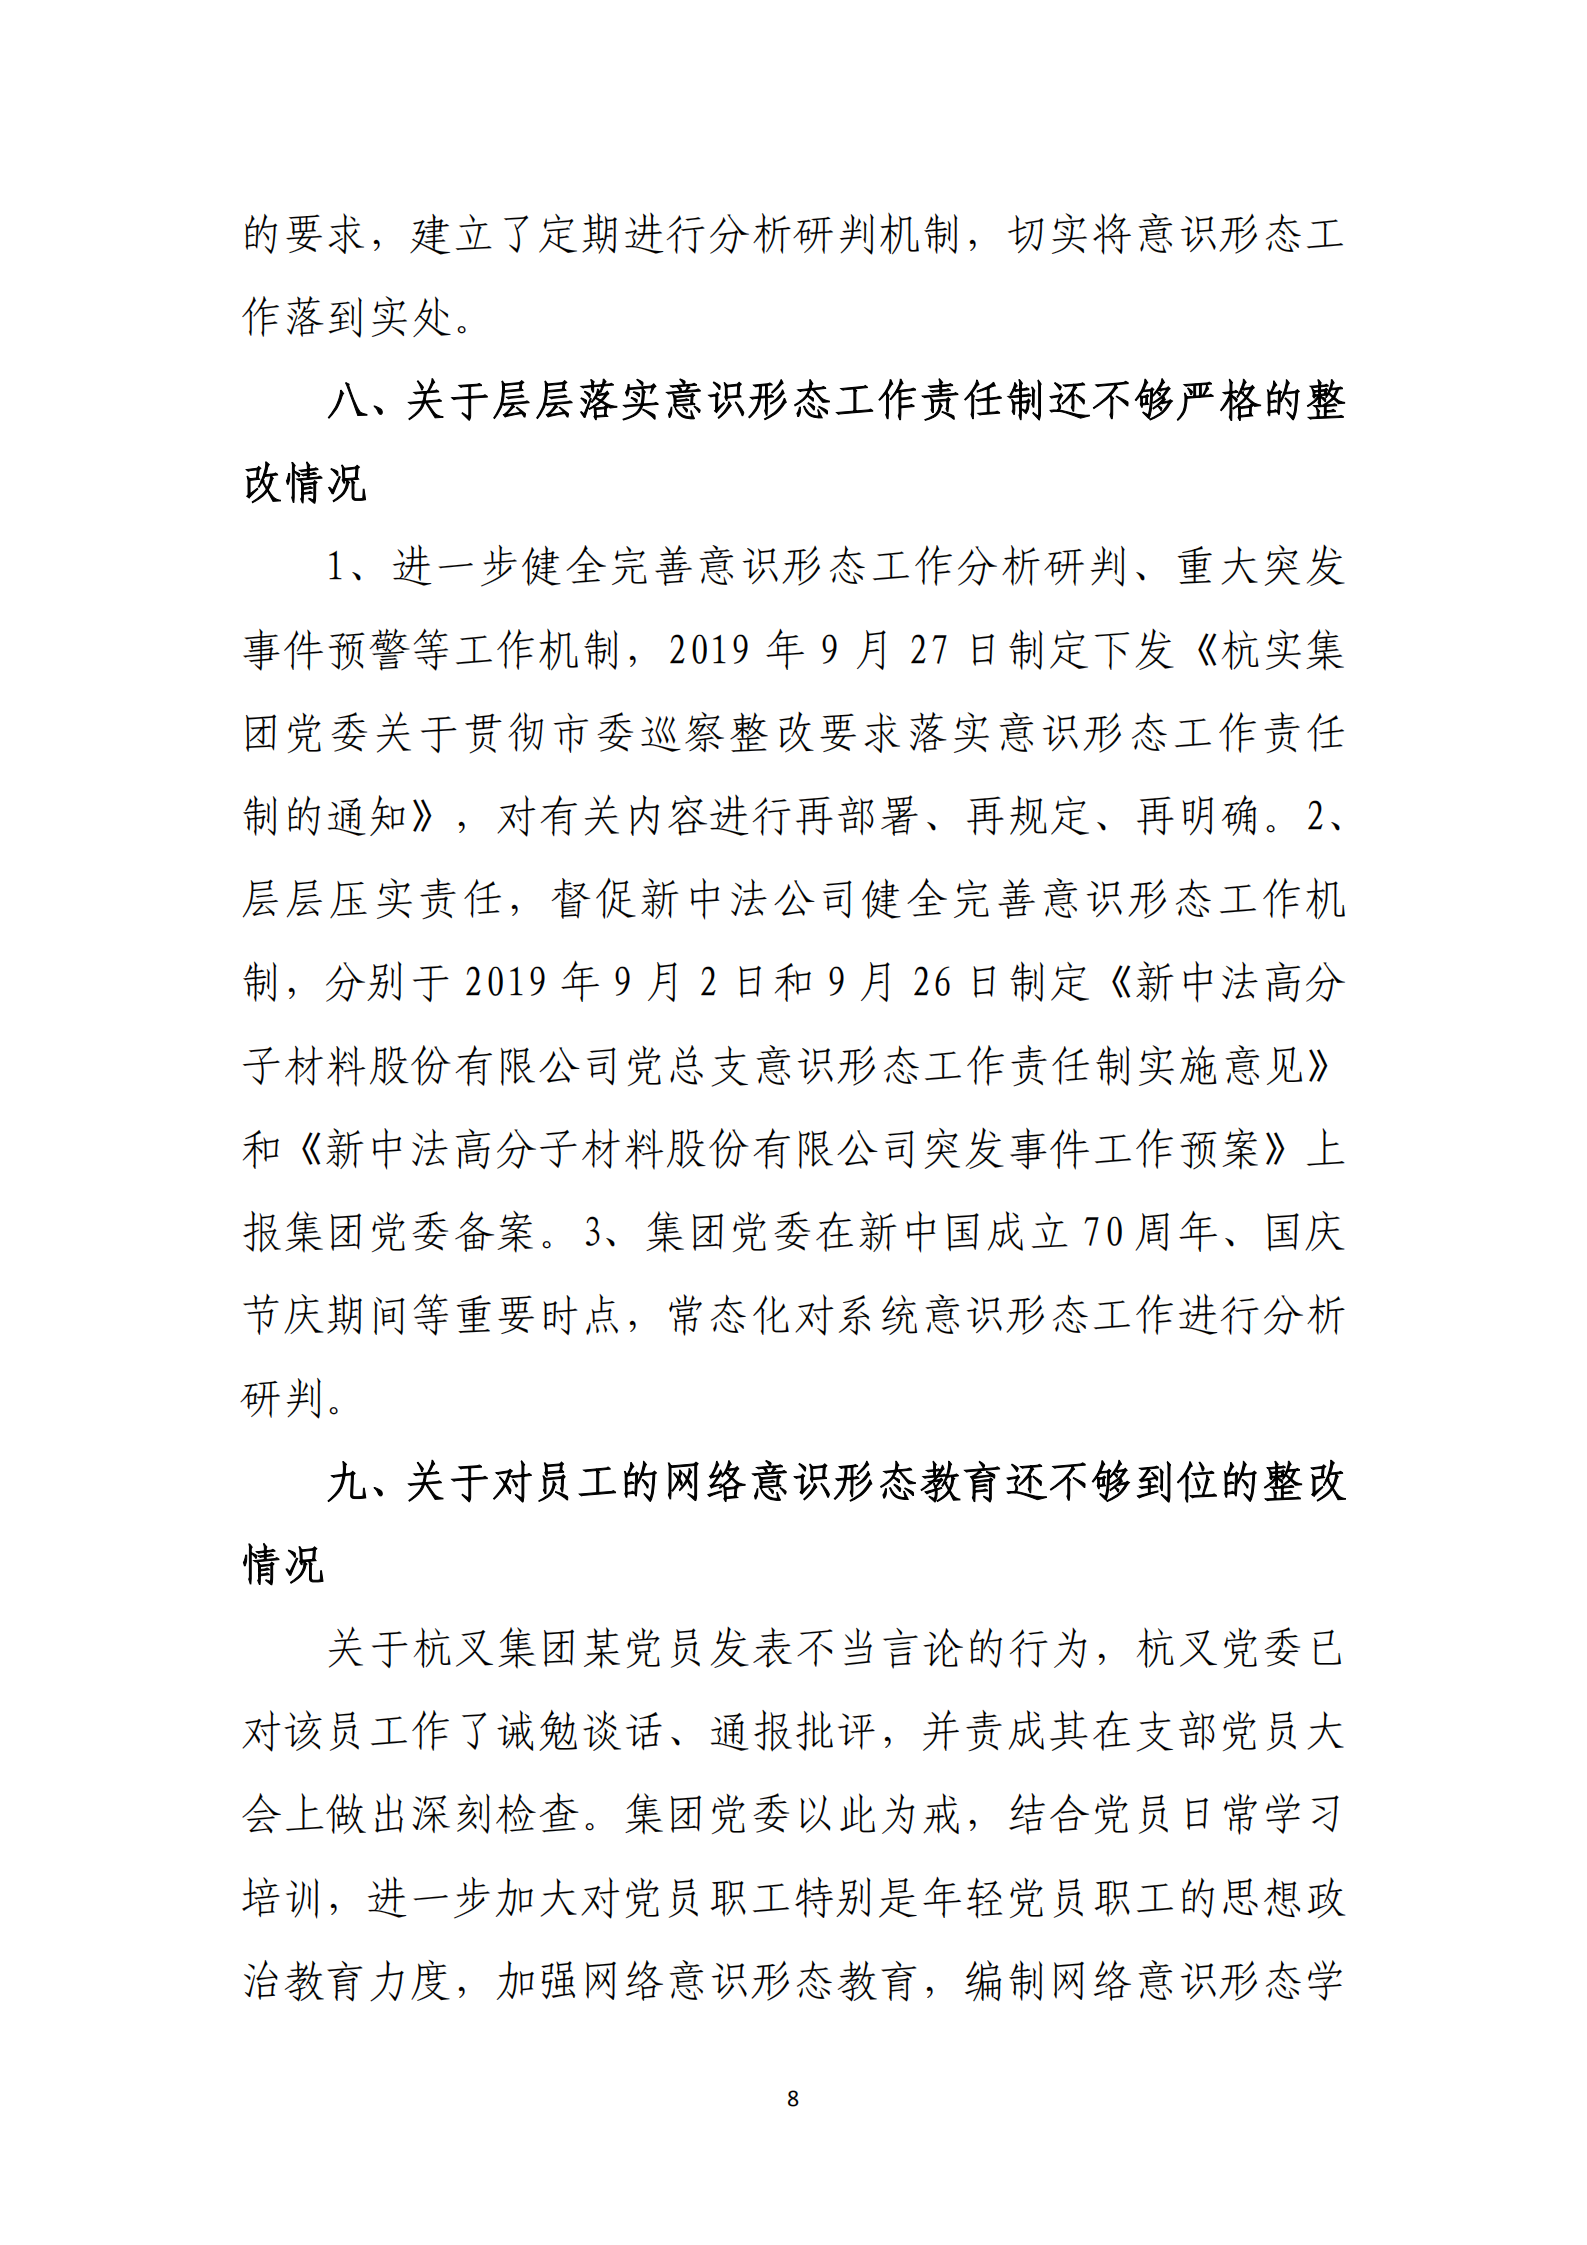 乐虎国际游戏官网党委关于巡察整改情况的通报_07.png